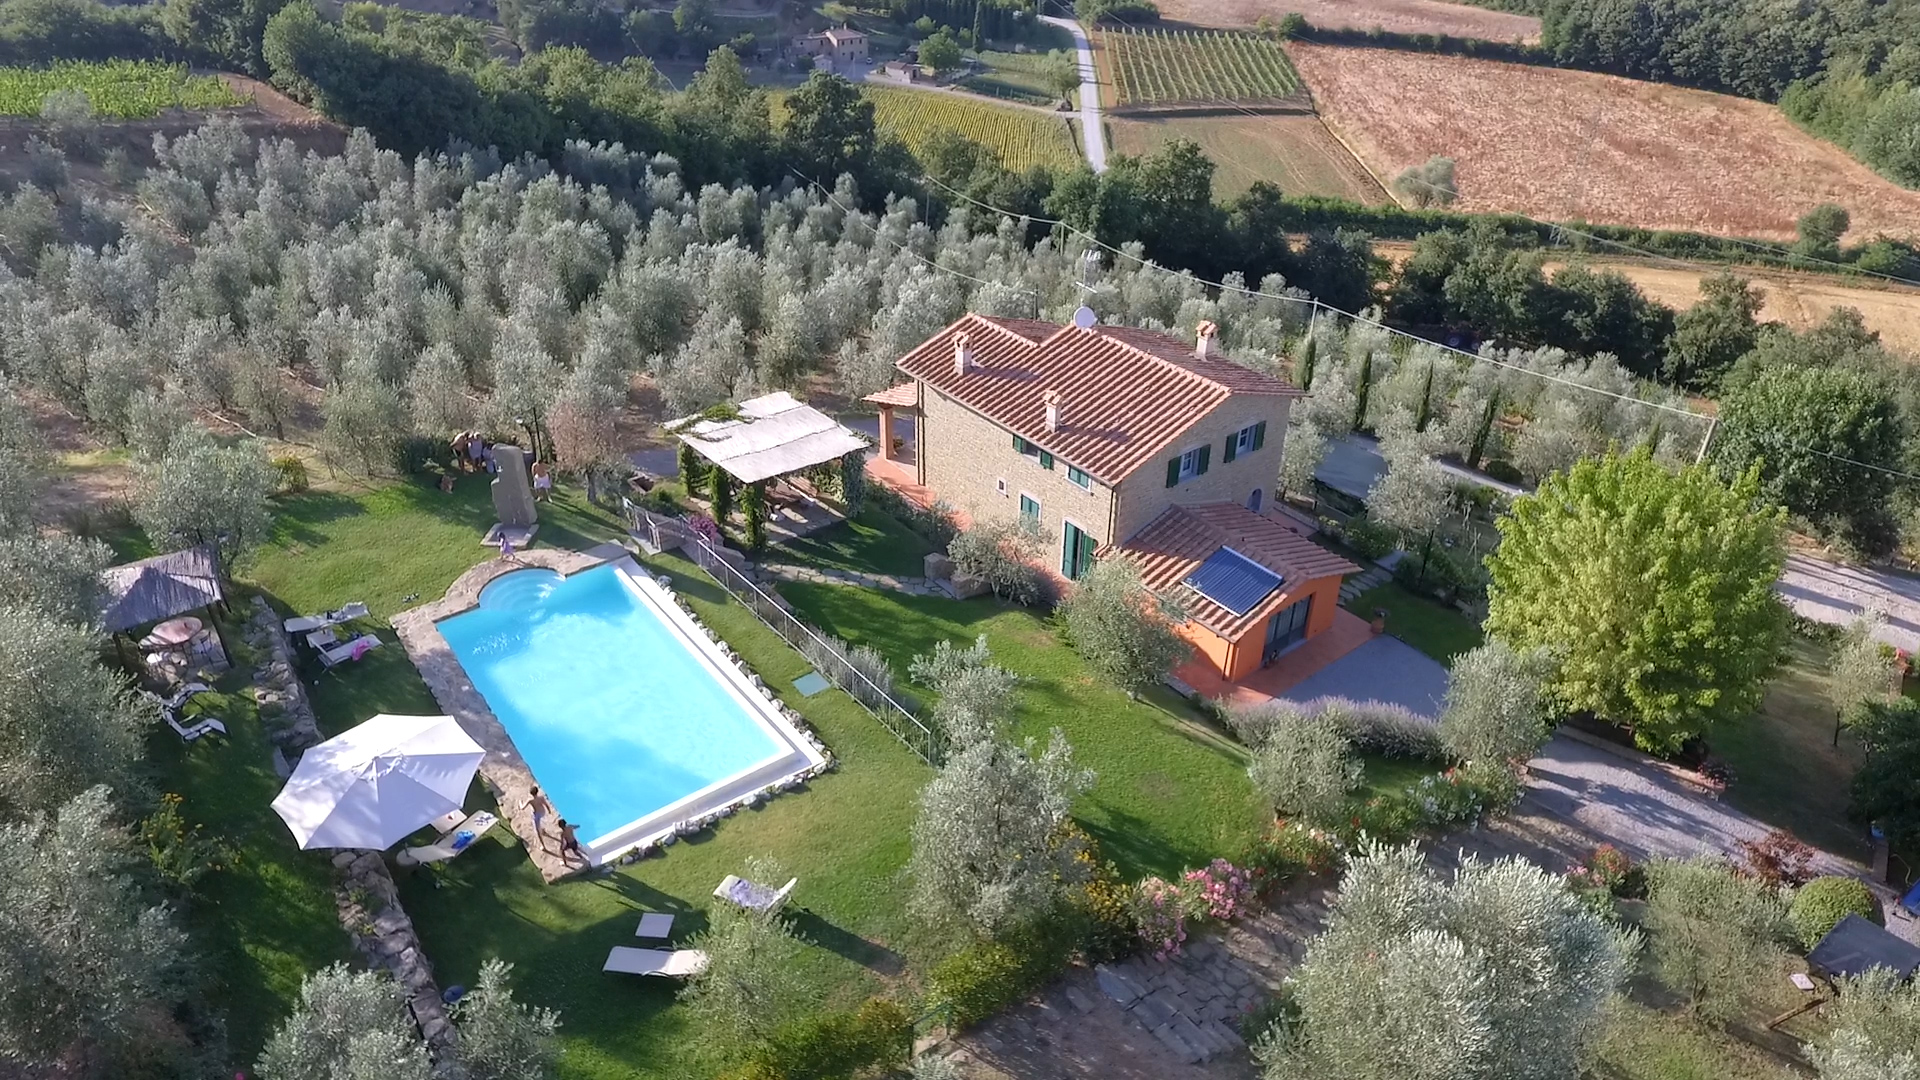 418_Villa Agrrosa Luxe vakantiehuis met prive zwembad Toscane Monte Savino Italie (9)